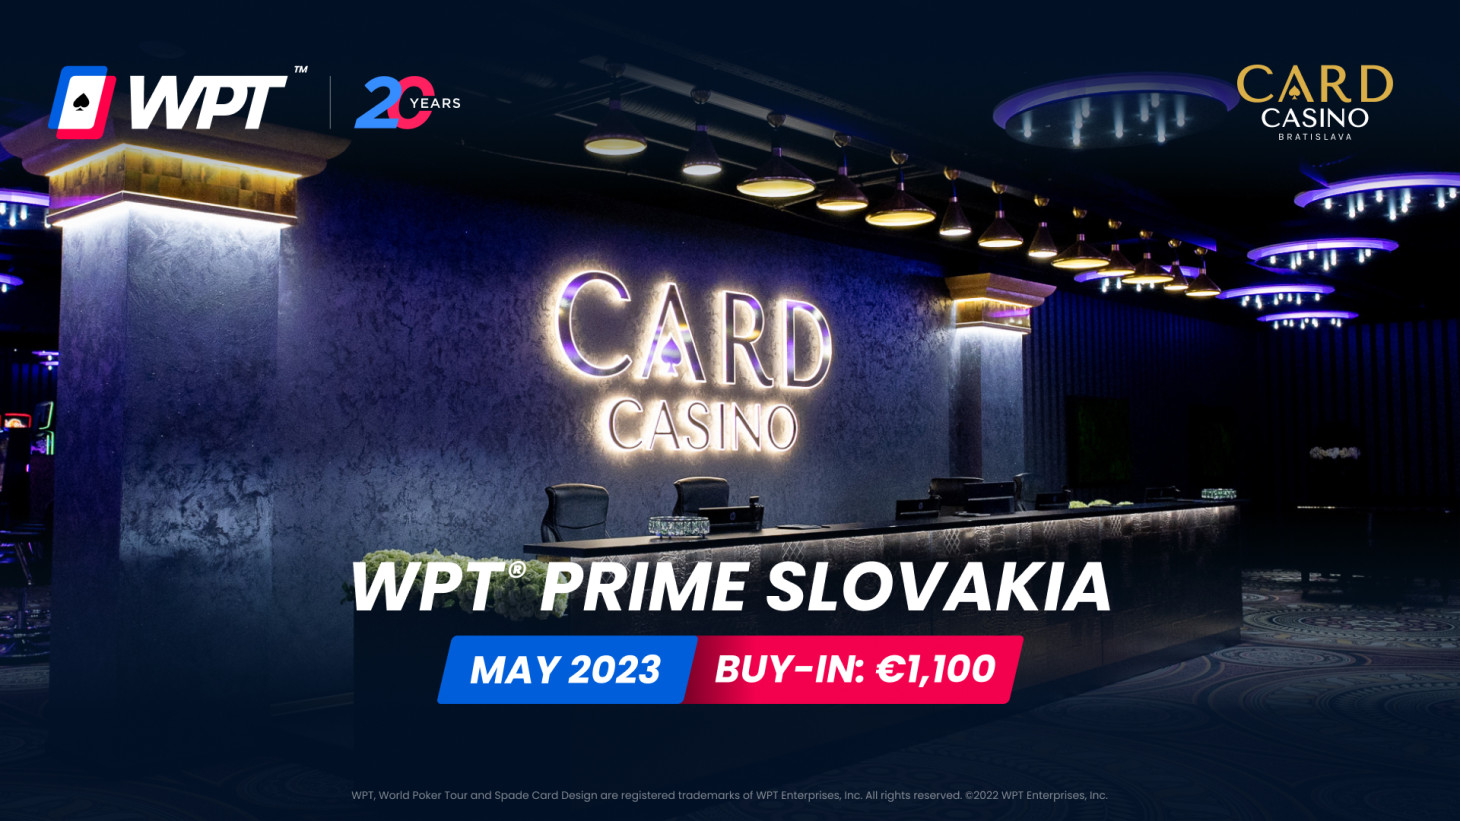 Here we go. The WPT World Poker Festival kicks off in Card Casino Bratislava!